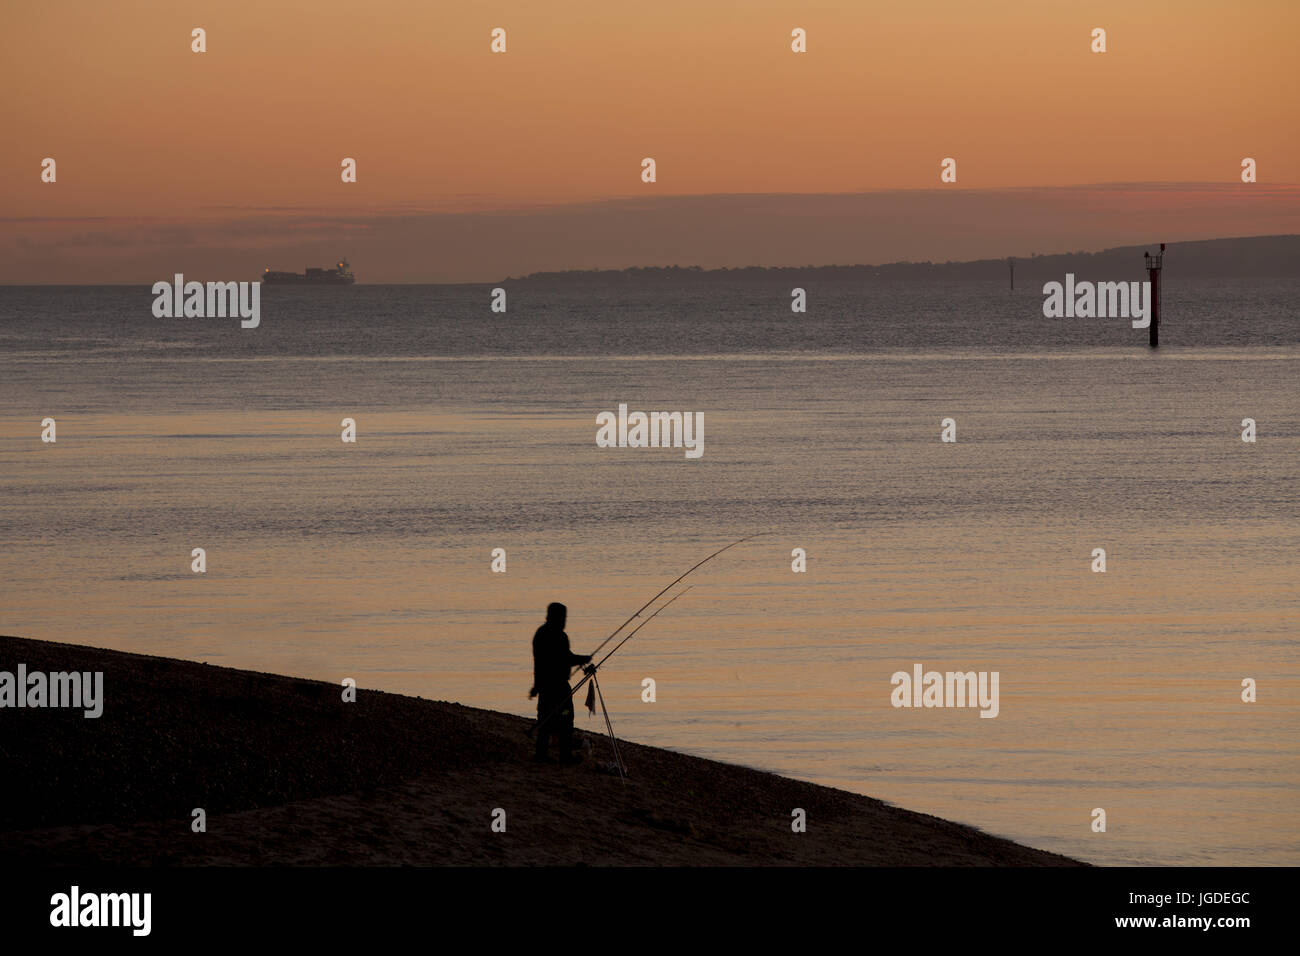 Silhouette Fischer angeln bei Sonnenuntergang an der Südküste von England. Orangefarbenen Himmel und ruhiger See auf Hayling Island. Idyllischer Weg, um einen Abend zu verbringen. Stockfoto